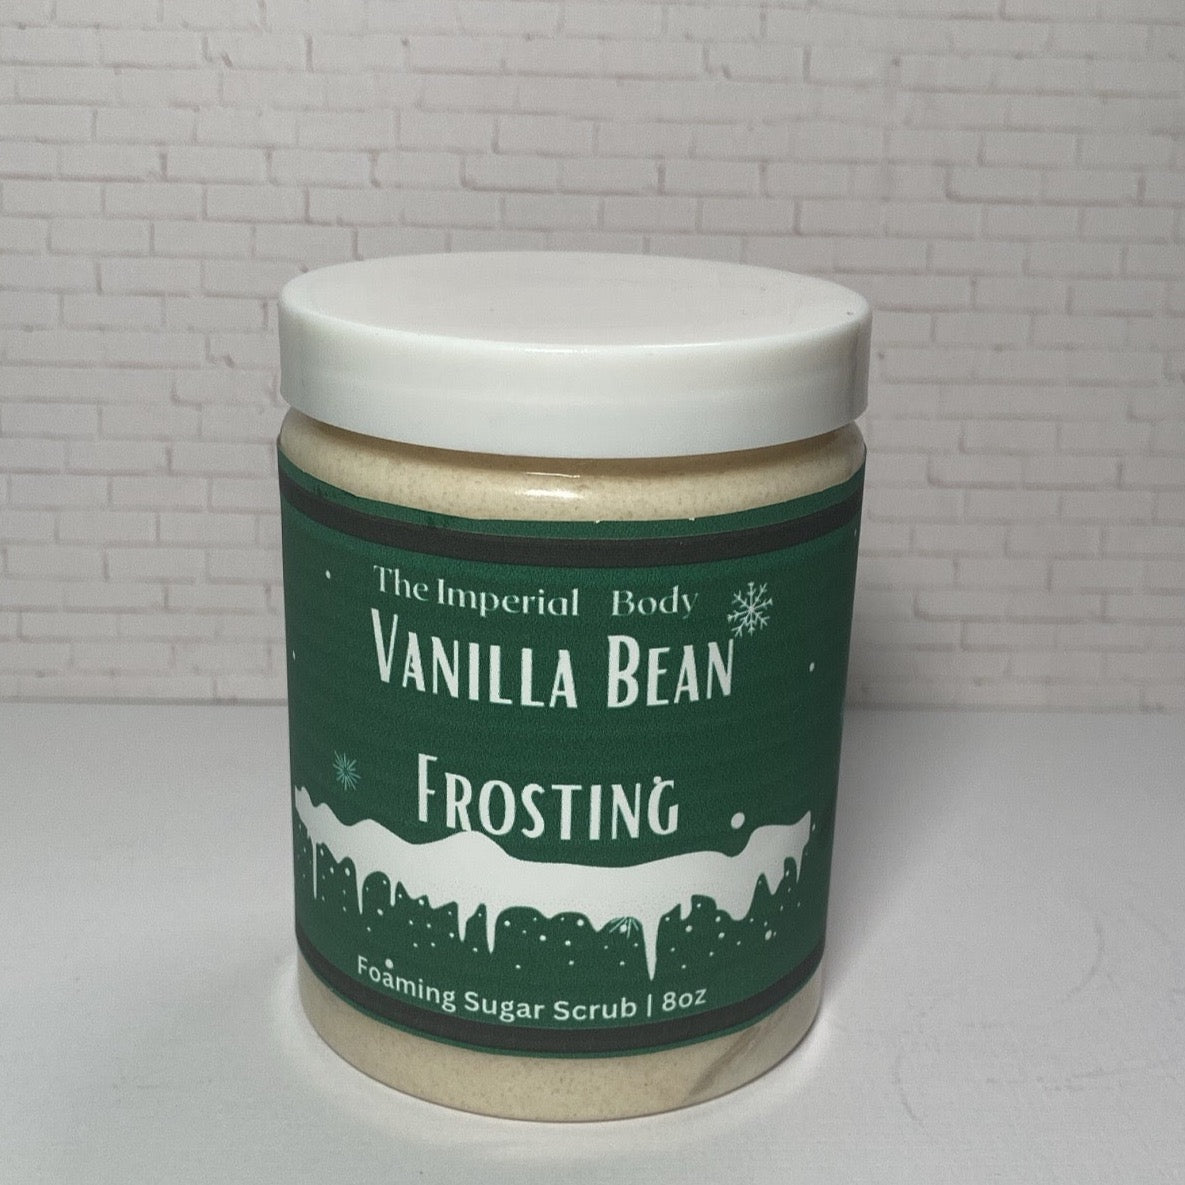 Vanilla Bean Frosting Foaming Sugar Scrub